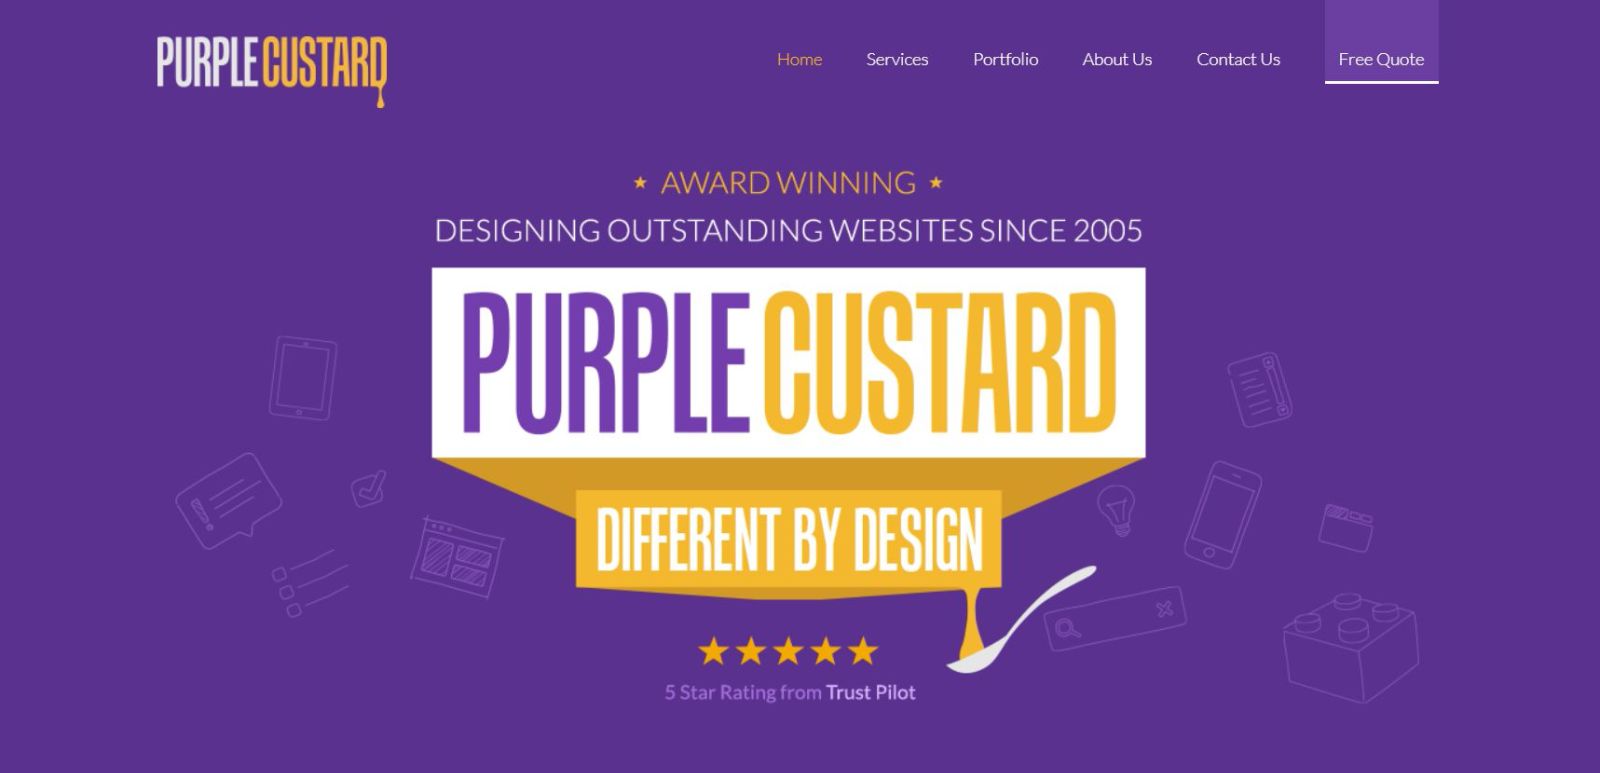 Purple Custard